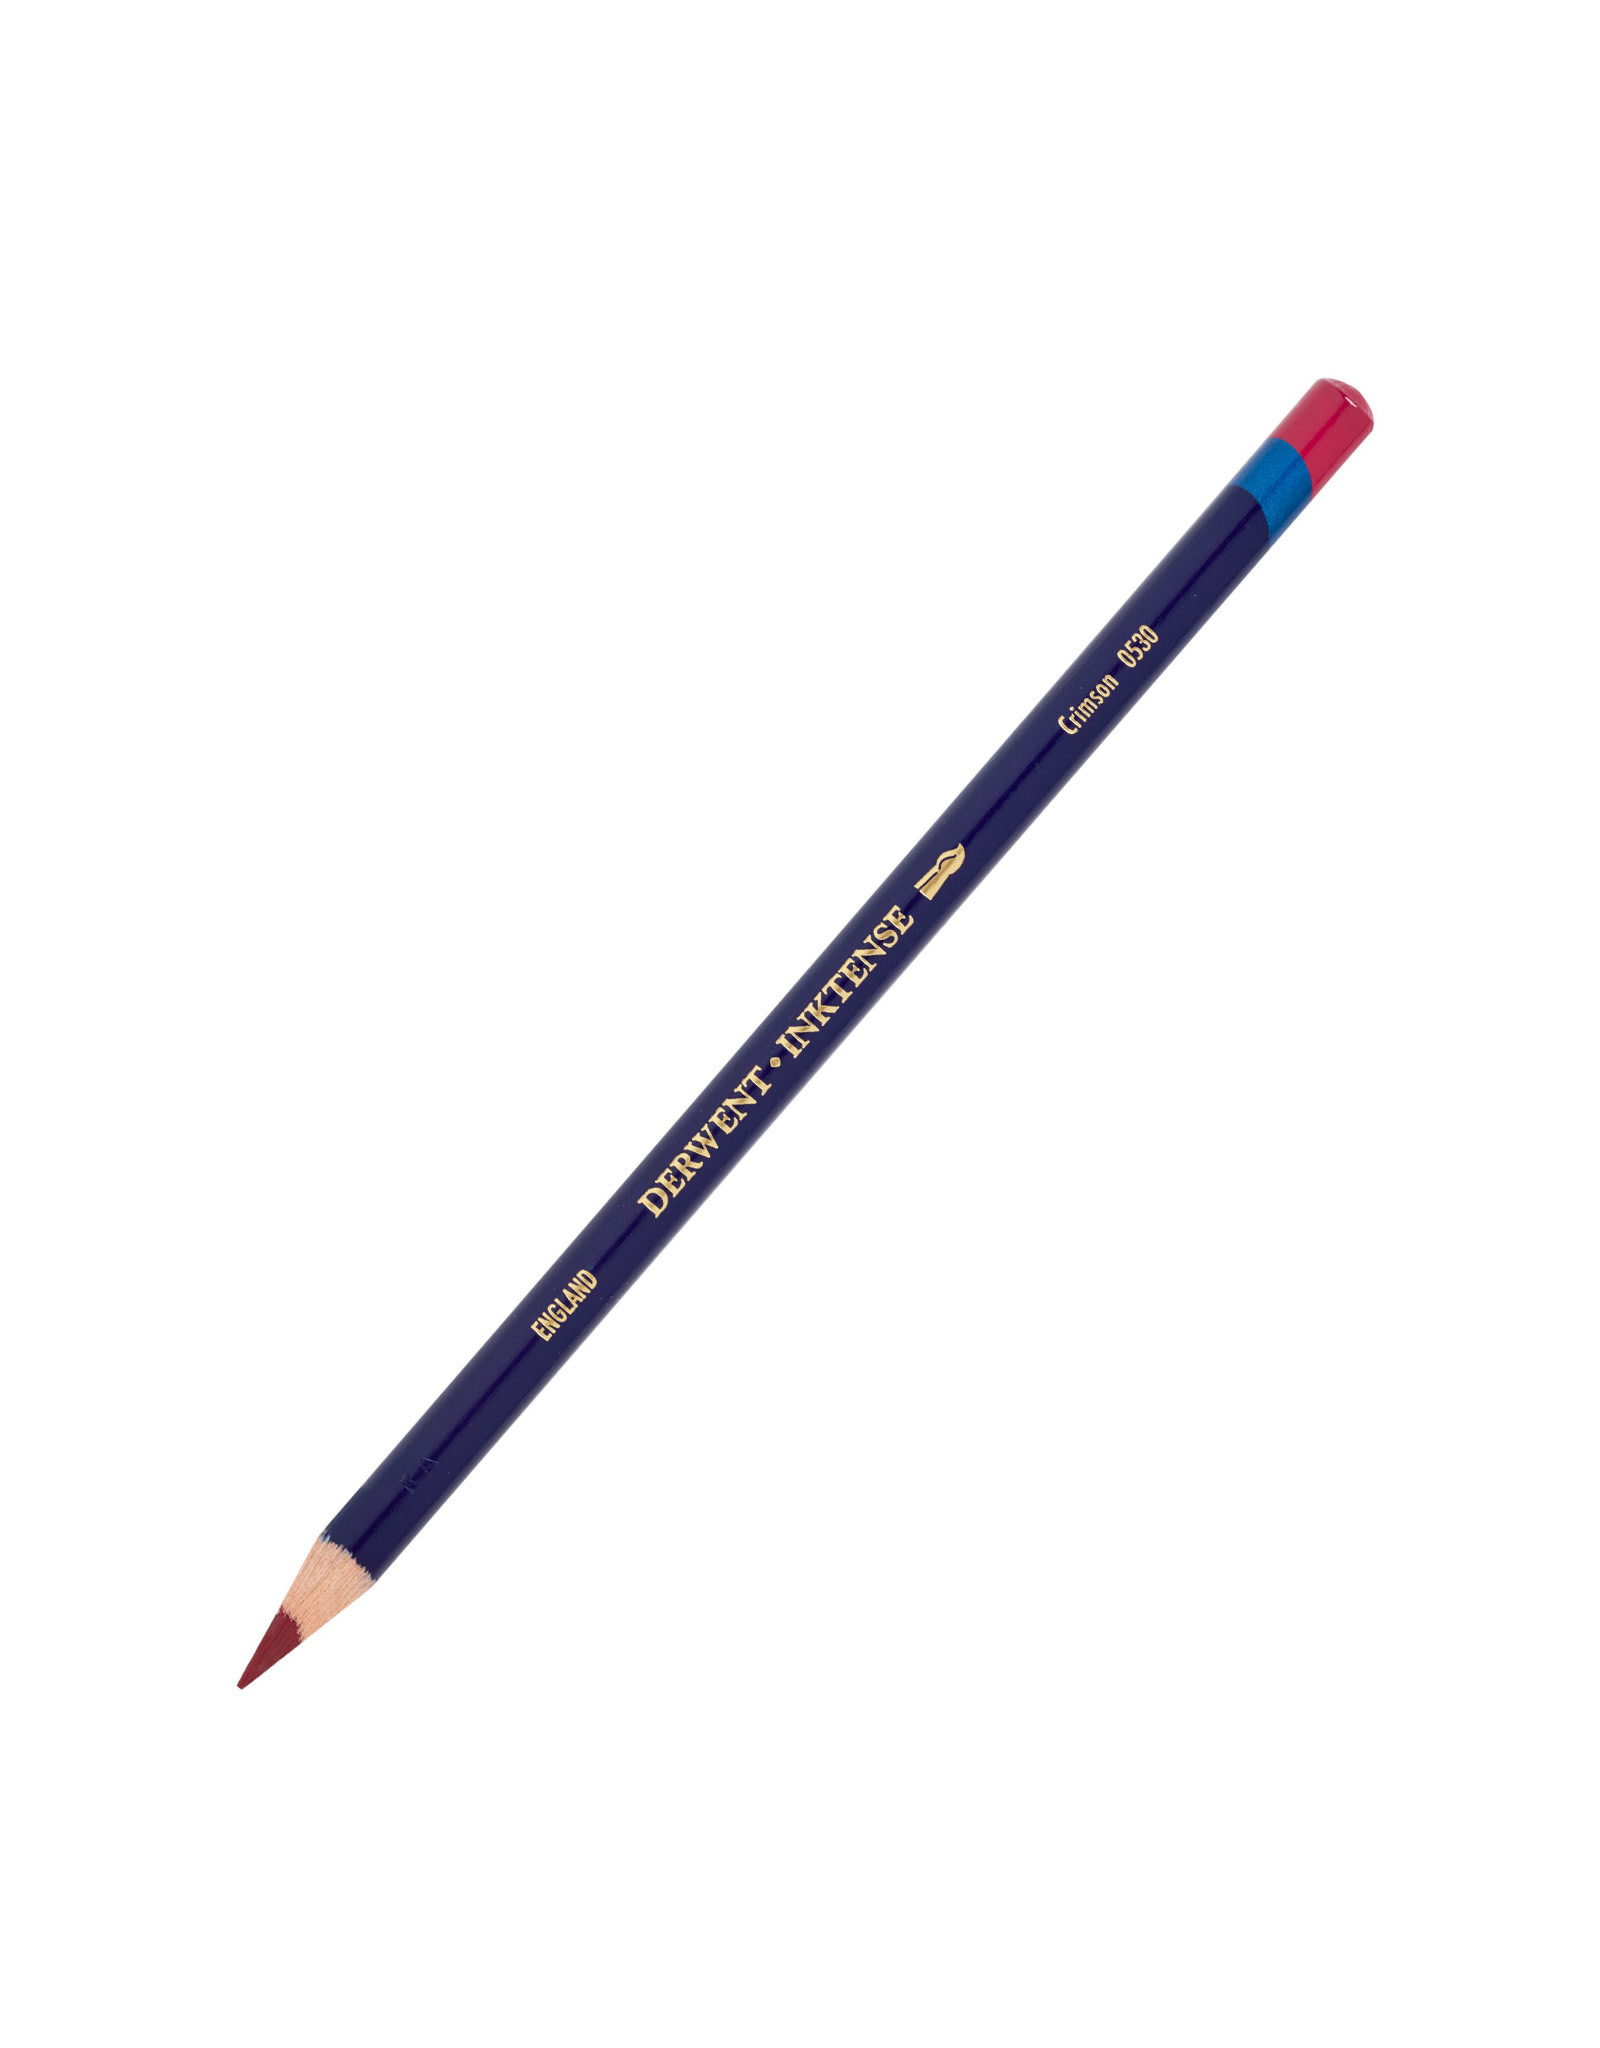 Derwent Derwent Inktense Pencil, Crimson